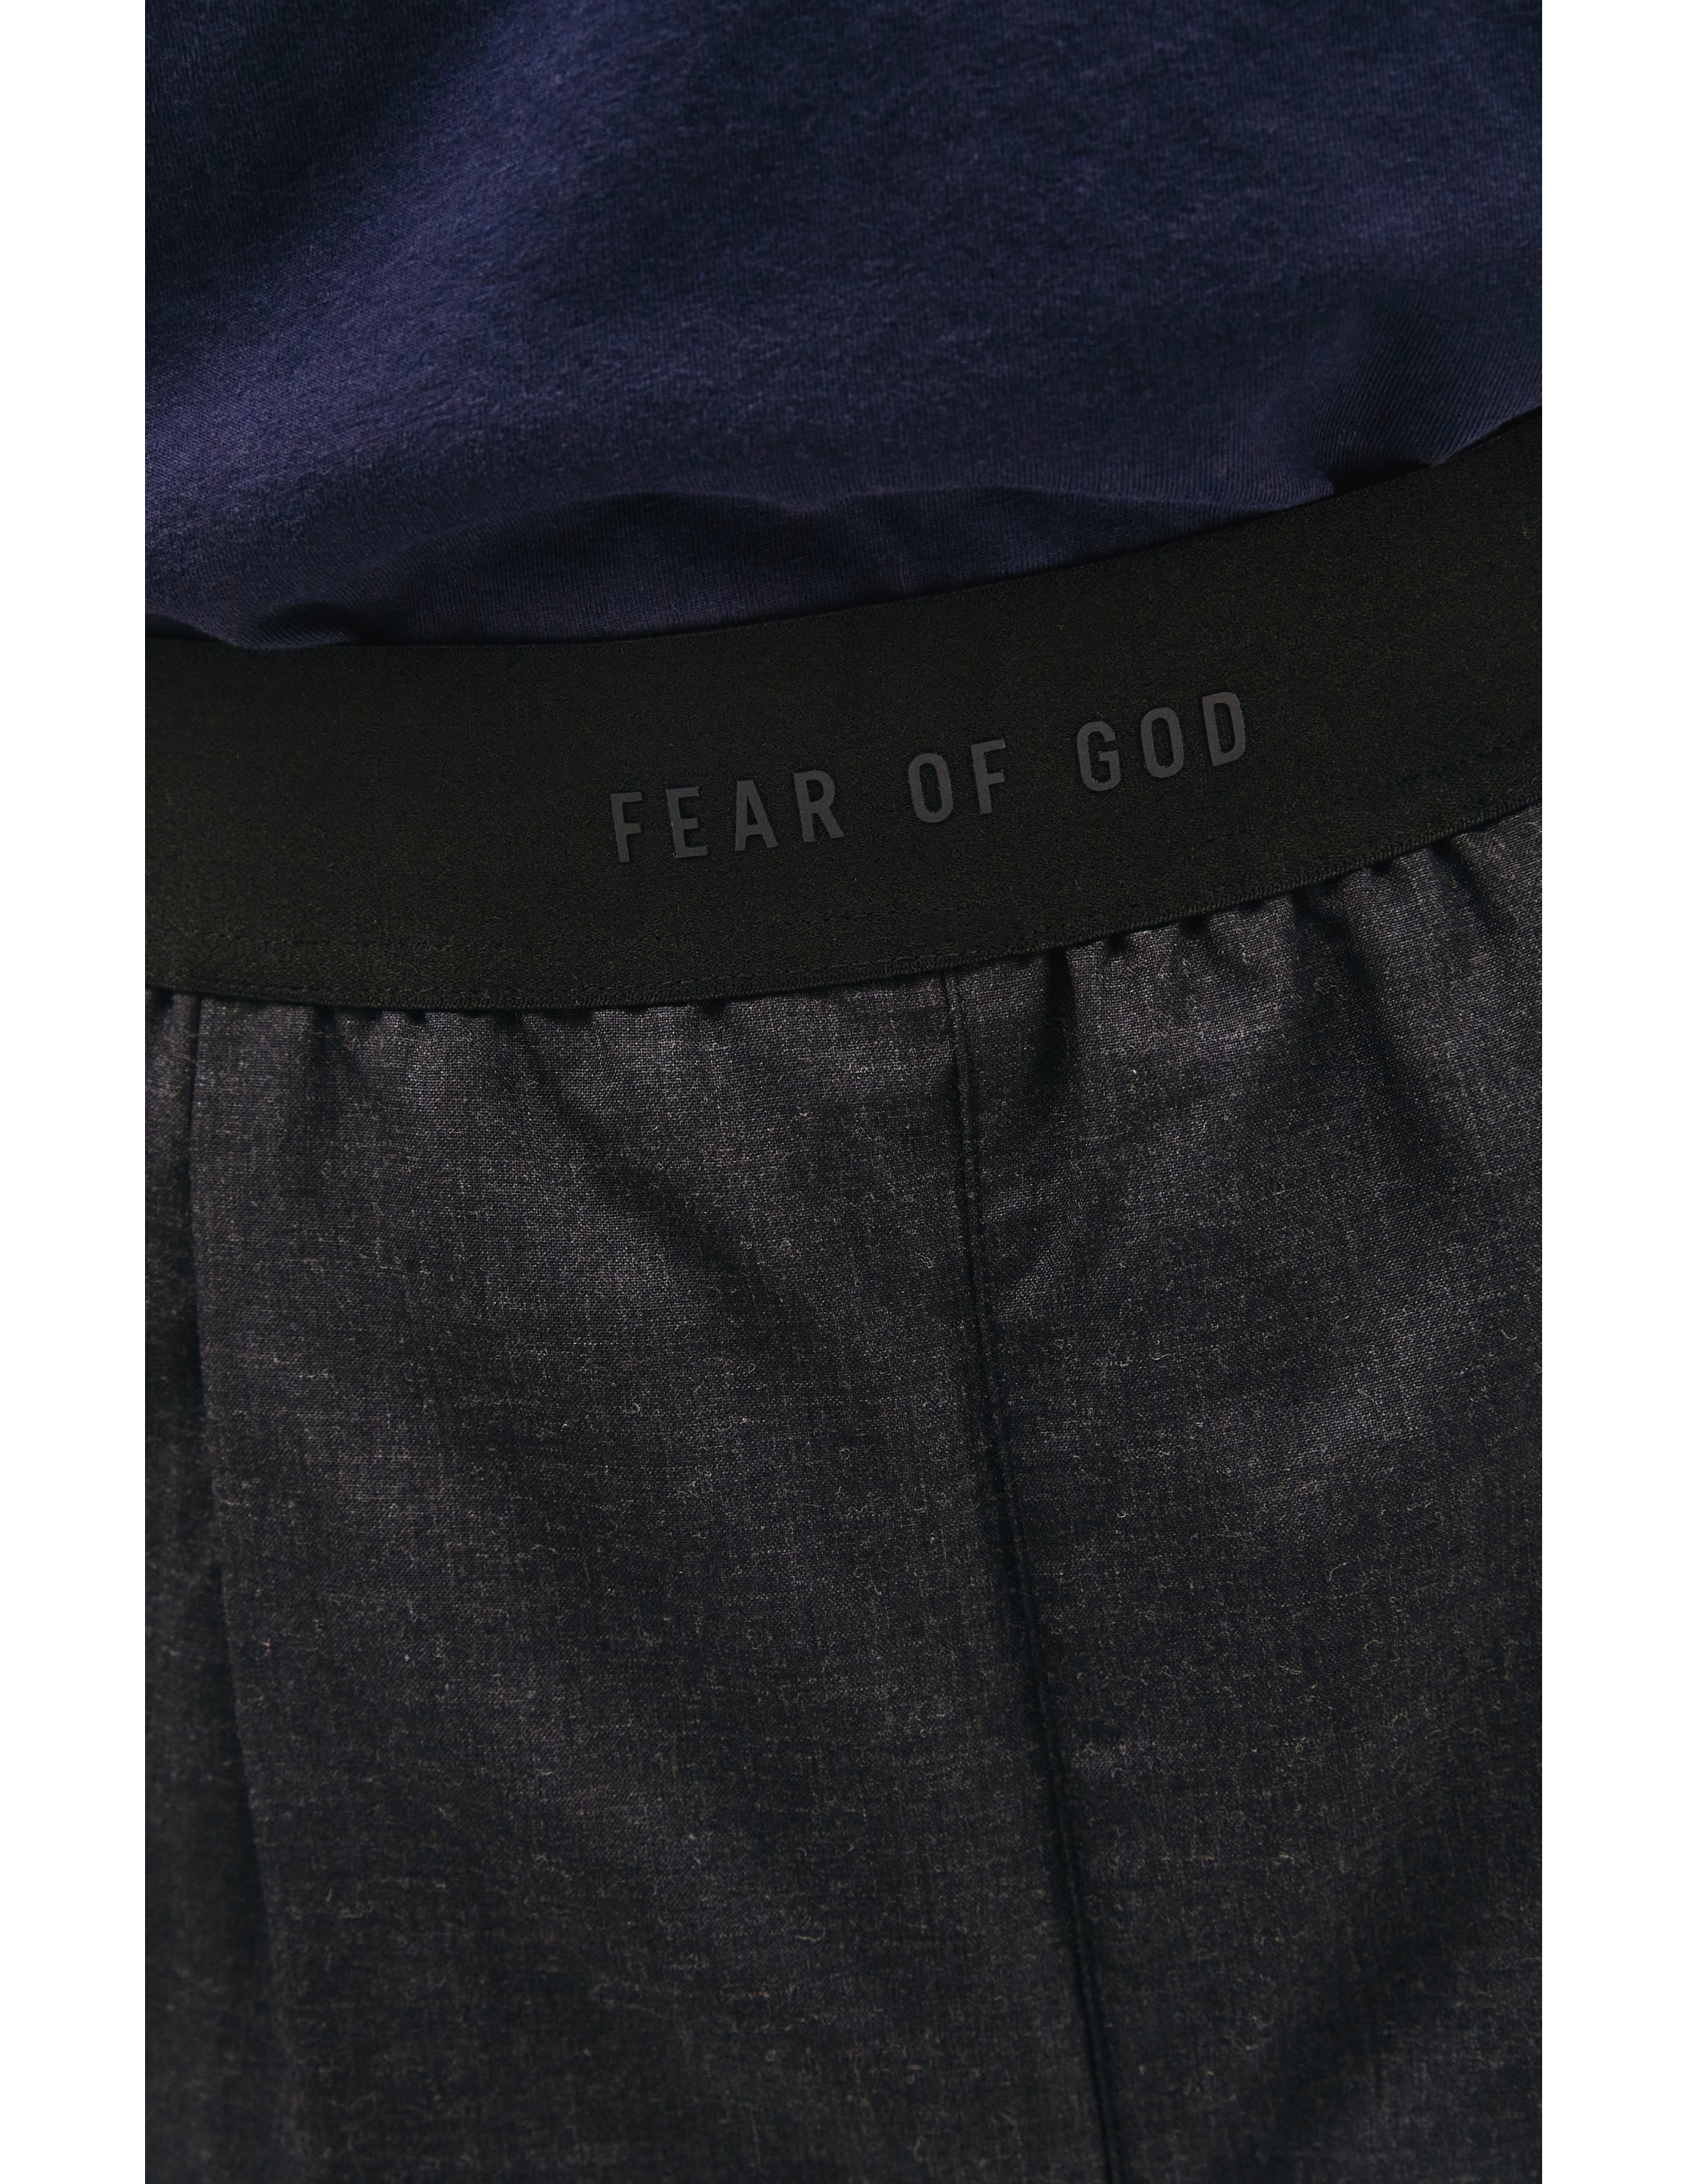 Прямые брюки со стрелками Fear of God FG40/036PWS/021, размер XXL;XL;L;M;S FG40/036PWS/021 - фото 4